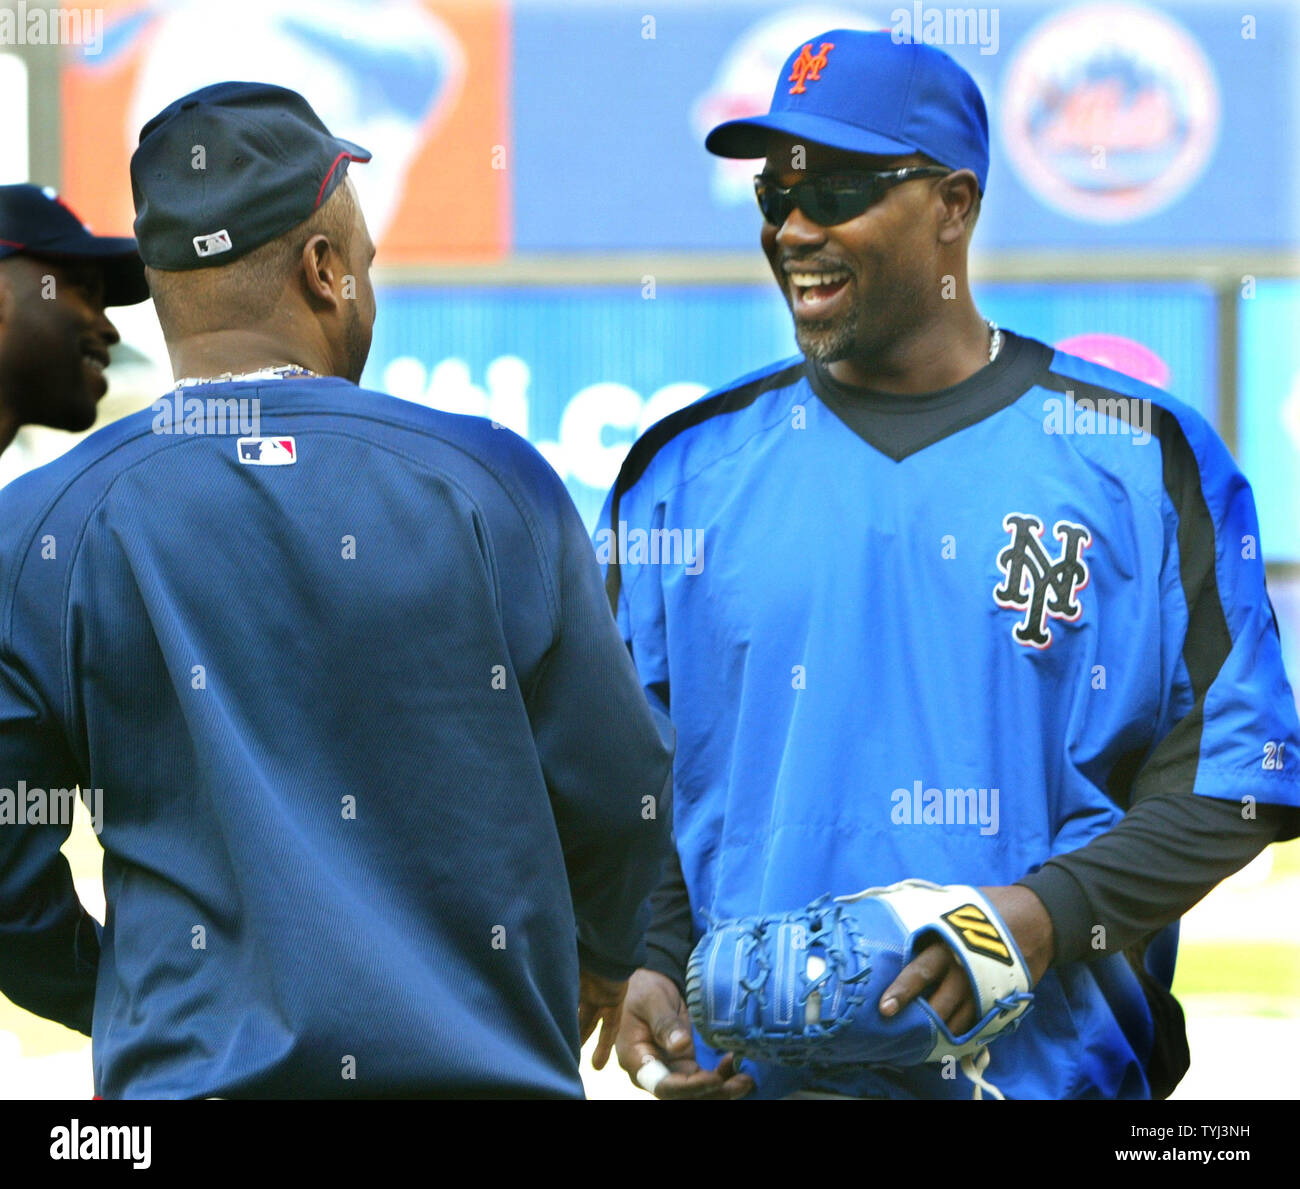 Luis Castillo (L) de los Minnesota Twins, y Carlos Delgado de los Mets de Nueva York compartir una risa durante la práctica de bateo antes del primer juego de la serie entre Liga en el Shea Stadium el 18 de junio de 2007 en Nueva York. (UPI foto/Monika Graff) Foto de stock